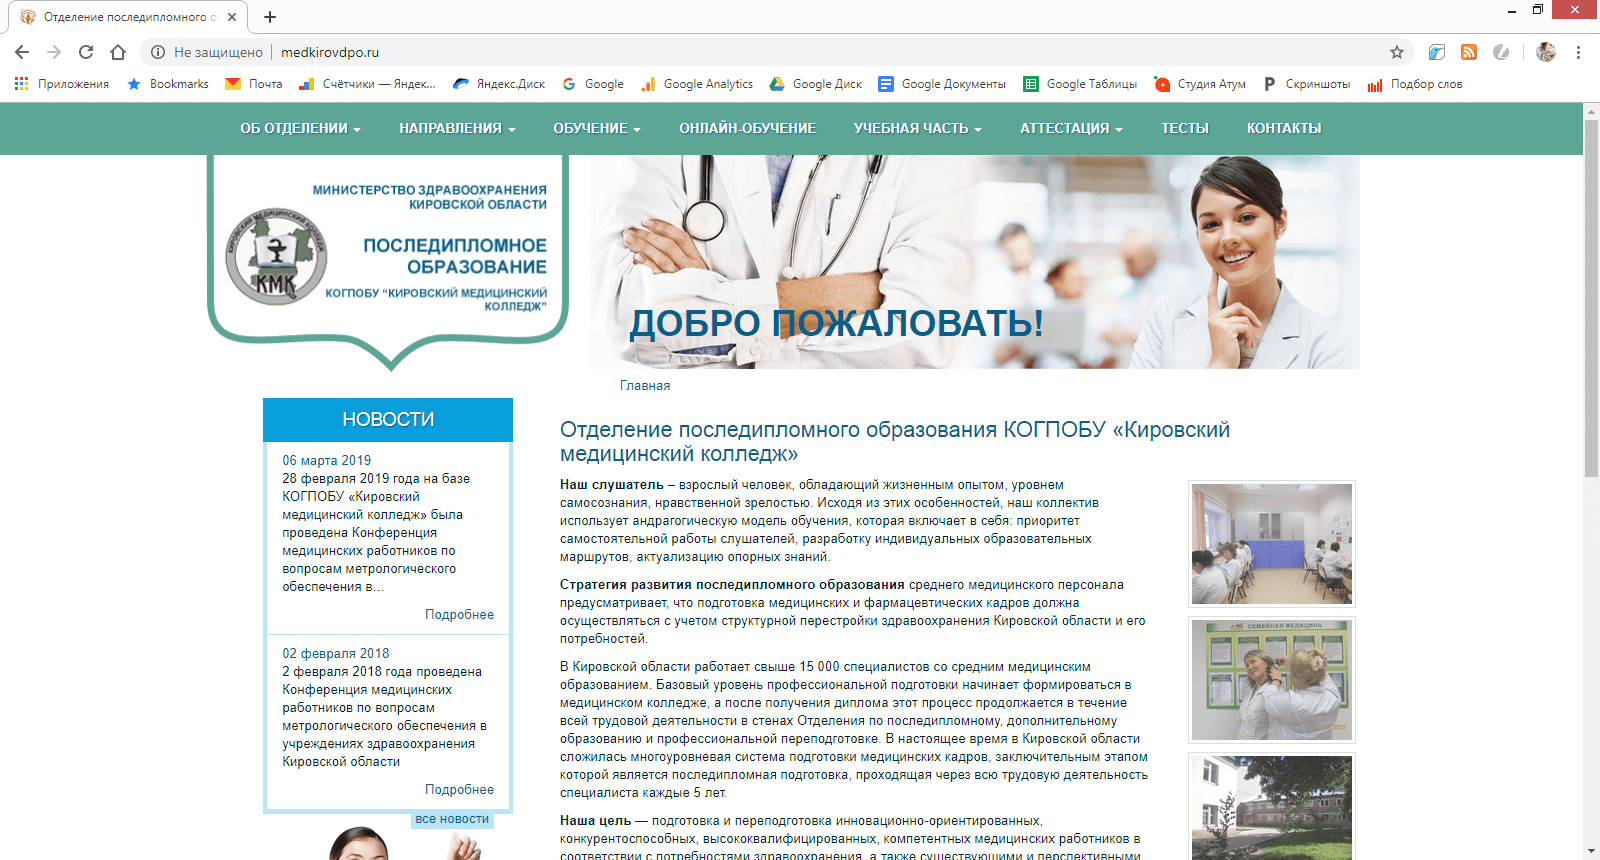 Кировский колледж последипломного образования